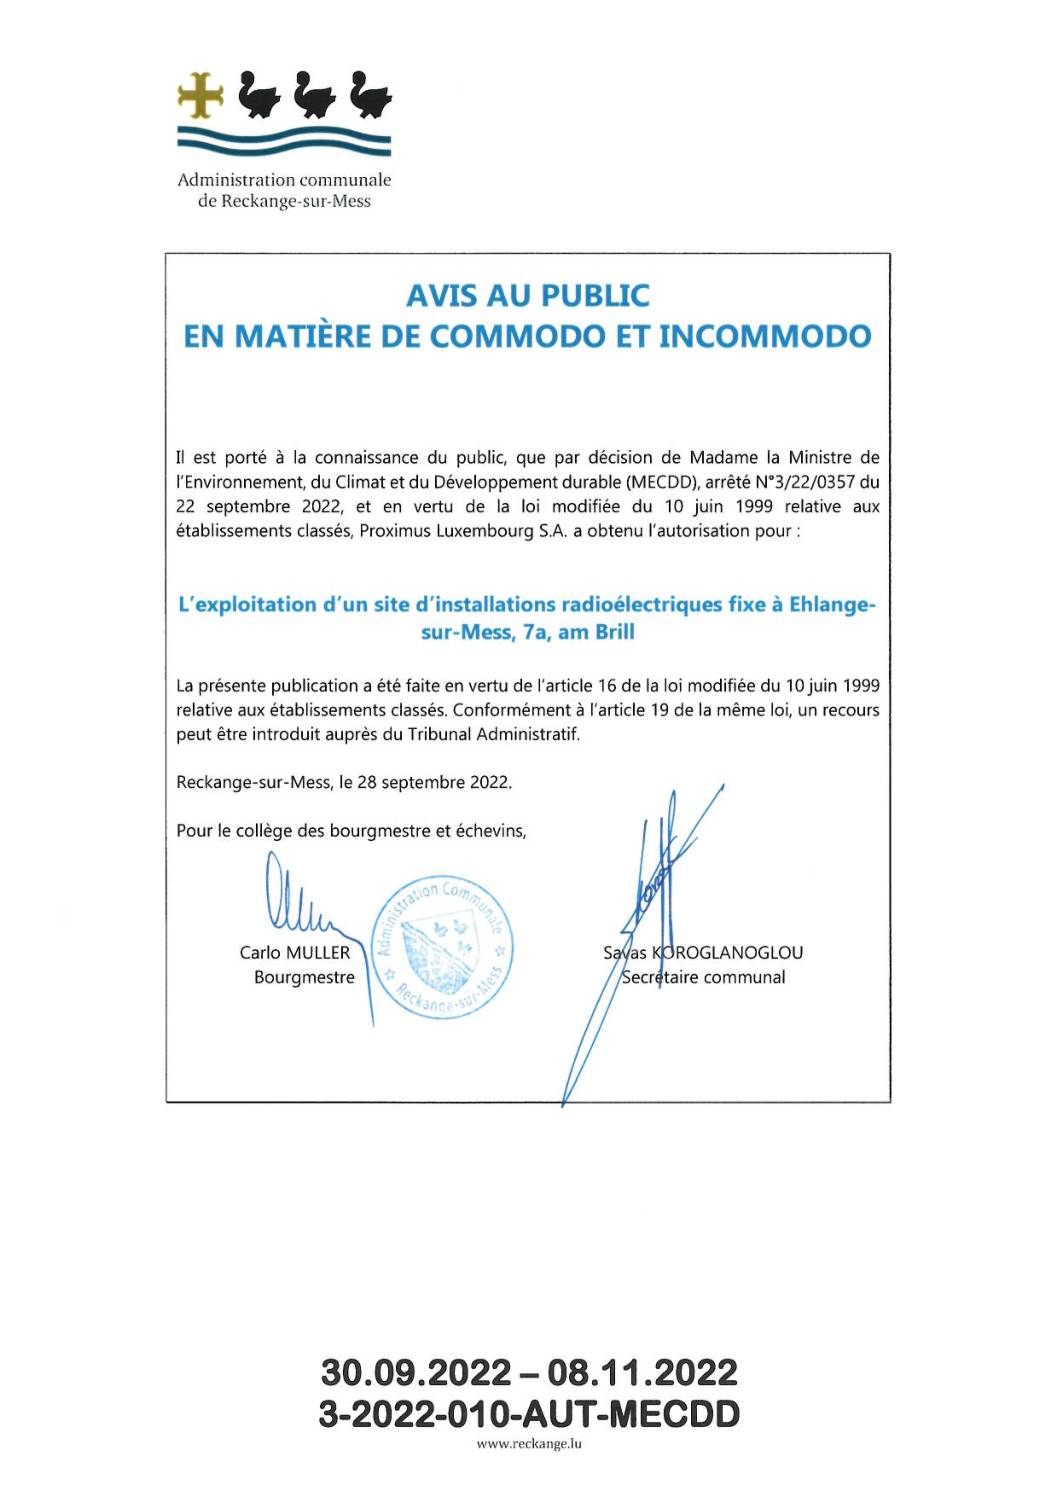 Proximus Luxembourg S.A. a obtenu l’autorisation (MECDD) pour: L’exploitation d’un site d’installations radioélectriques fixe à Ehlange-sur-Mess, 7a, am Brill